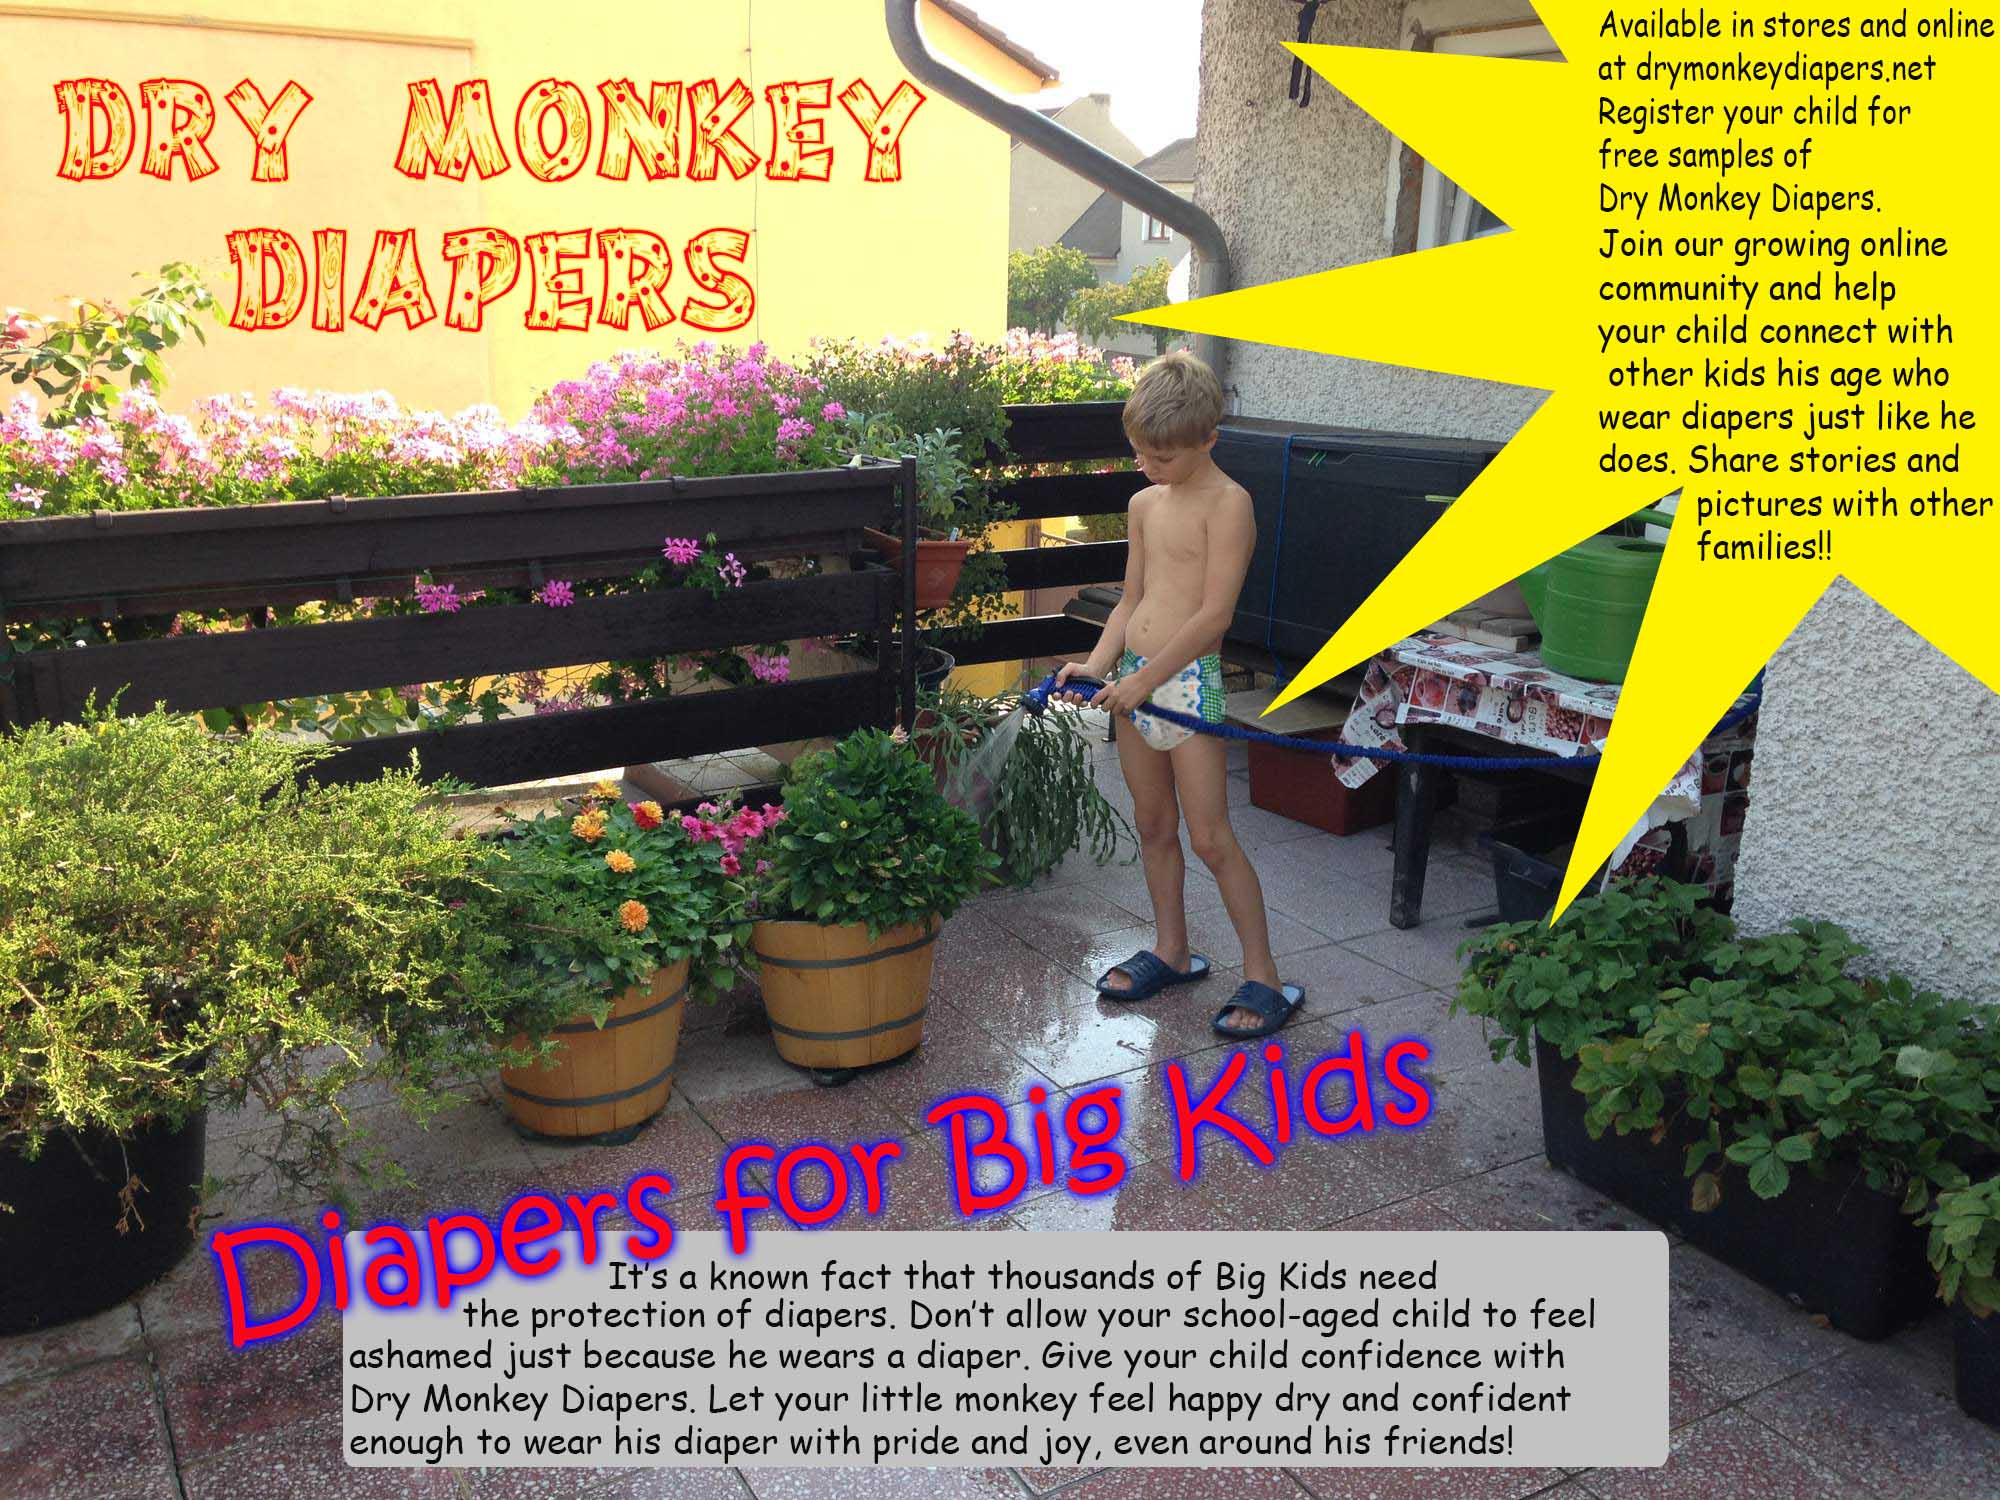 Dry Monkey Diapers.jpg